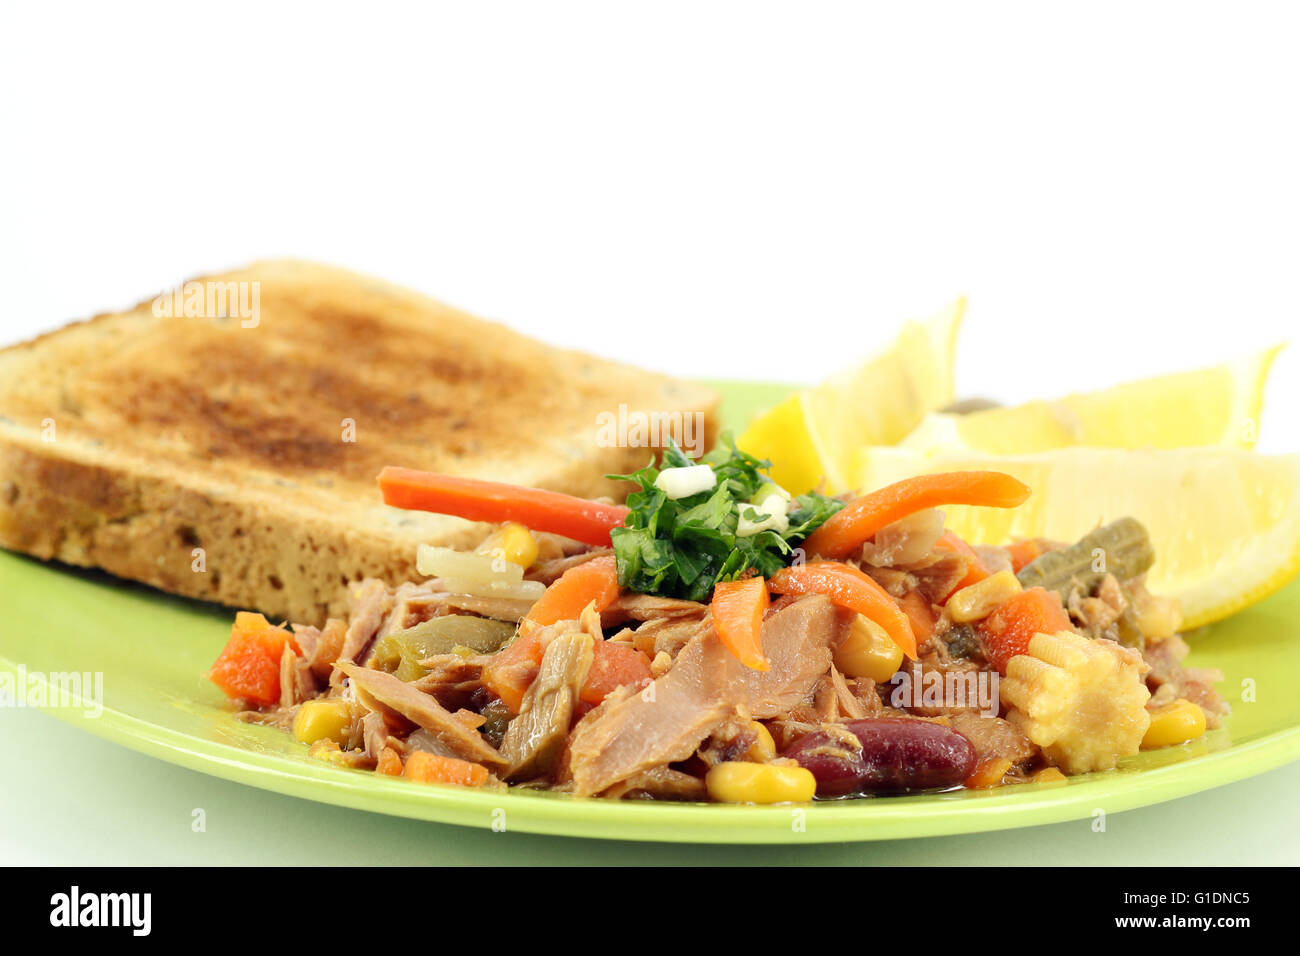 tuna fish with salad and bread Stock Photo